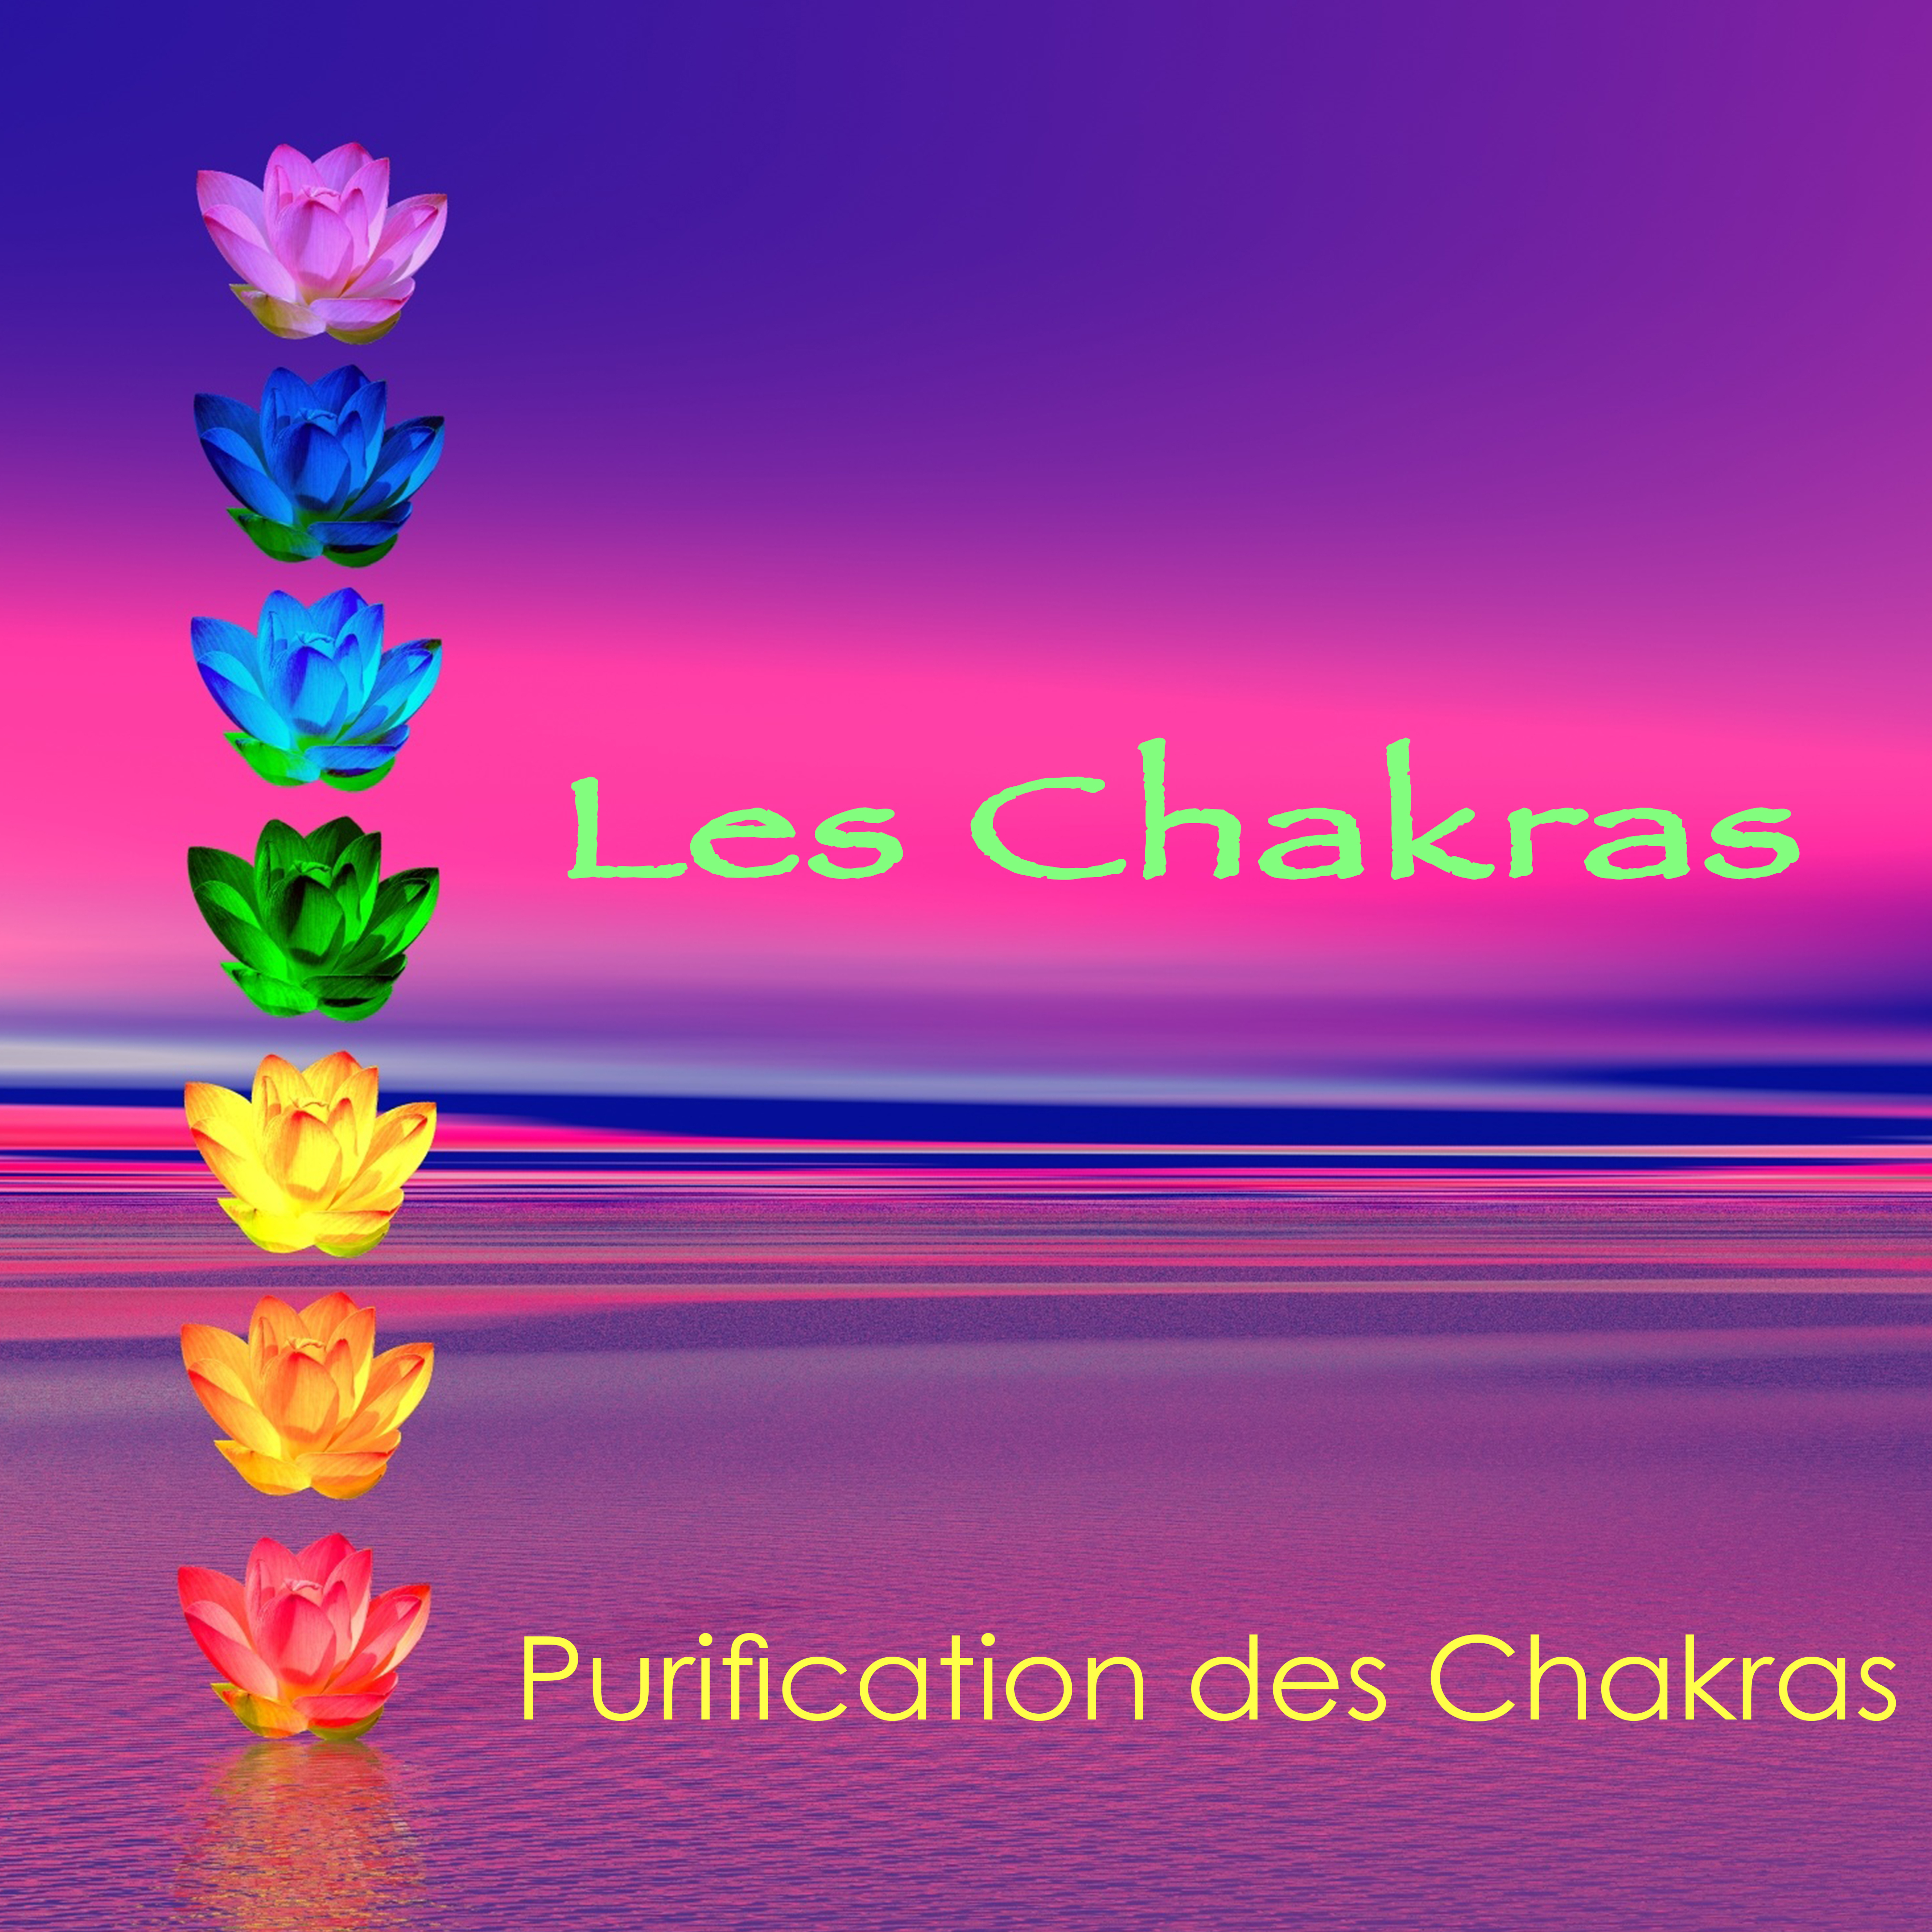 Les Chakras - Purification des Chakras, musique relaxante de détente pour l'équilibrage des chakras et l'éveil spirituel